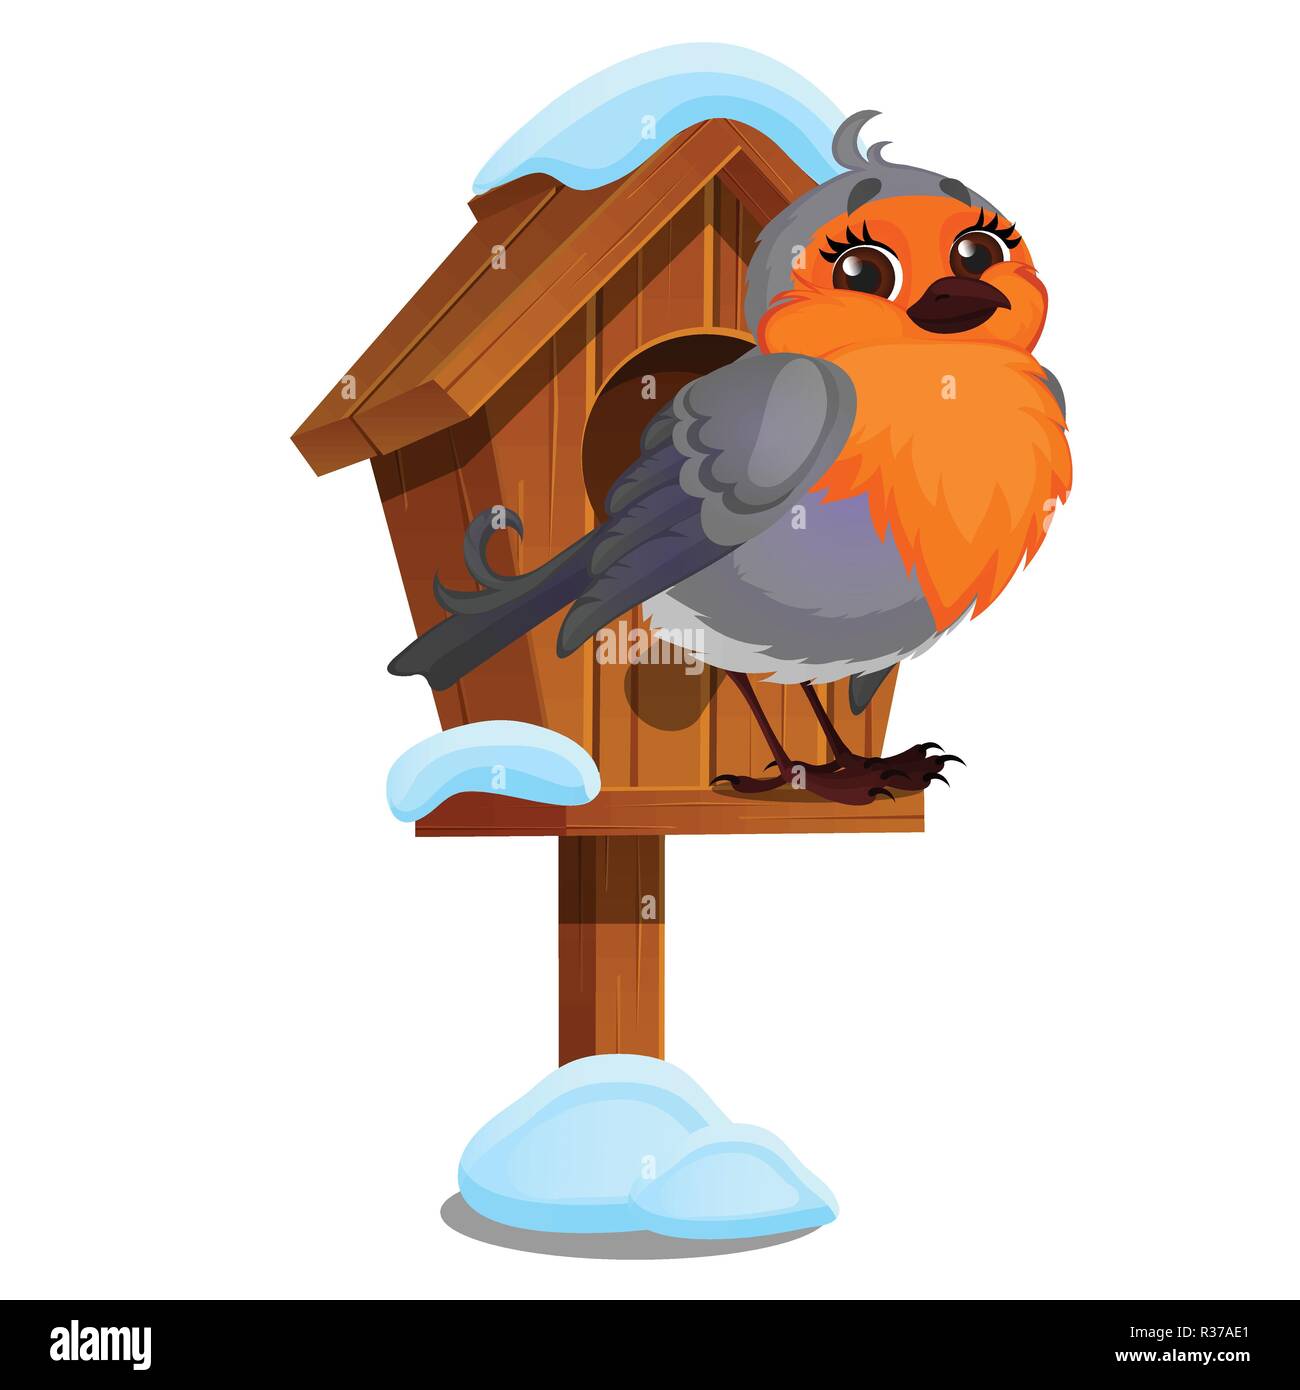 Süße Vogel sitzt in einem hölzernen Vogelhaus auf einem weißen Hintergrund.  Winter Häuser sind für Wildtiere geschaffen. Vektor cartoon Close-up  Abbildung Stock-Vektorgrafik - Alamy